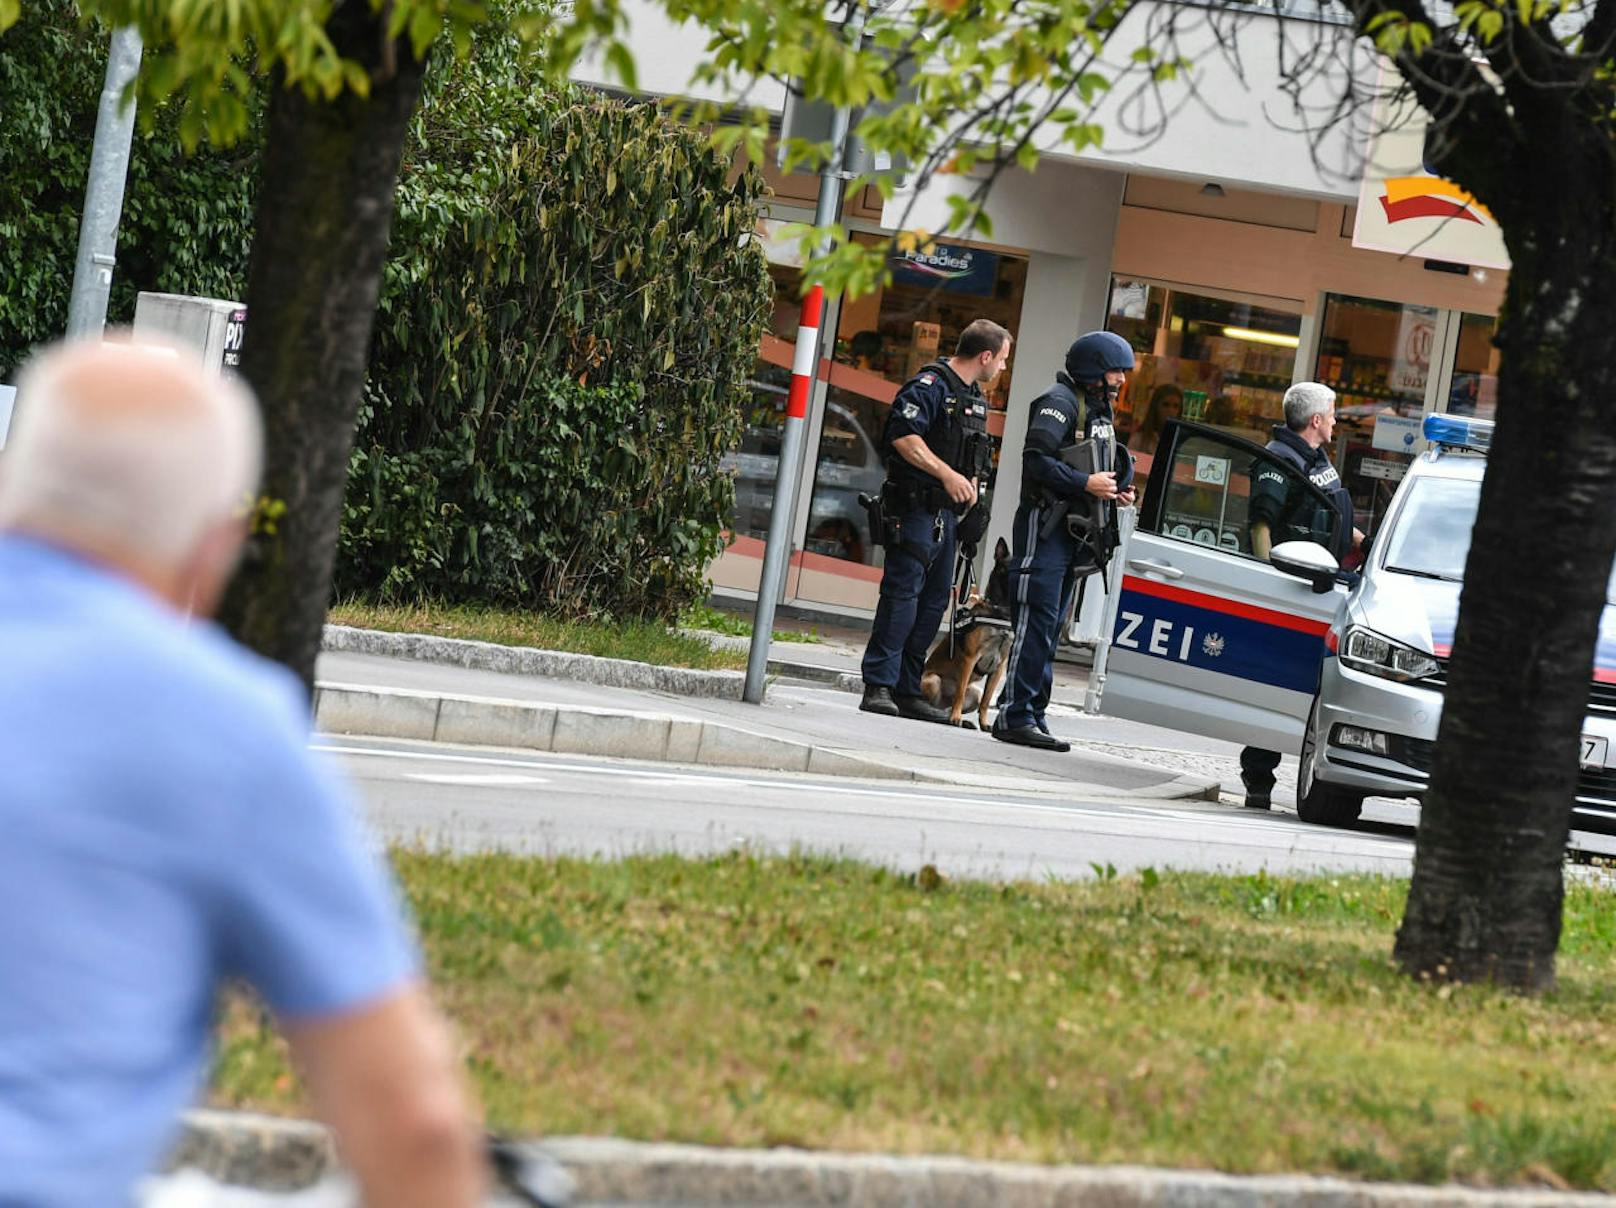 Fotos vom Polizeieinsatz im Zuge eines Banküberfalls in Innsbruck am 13. August 2018.